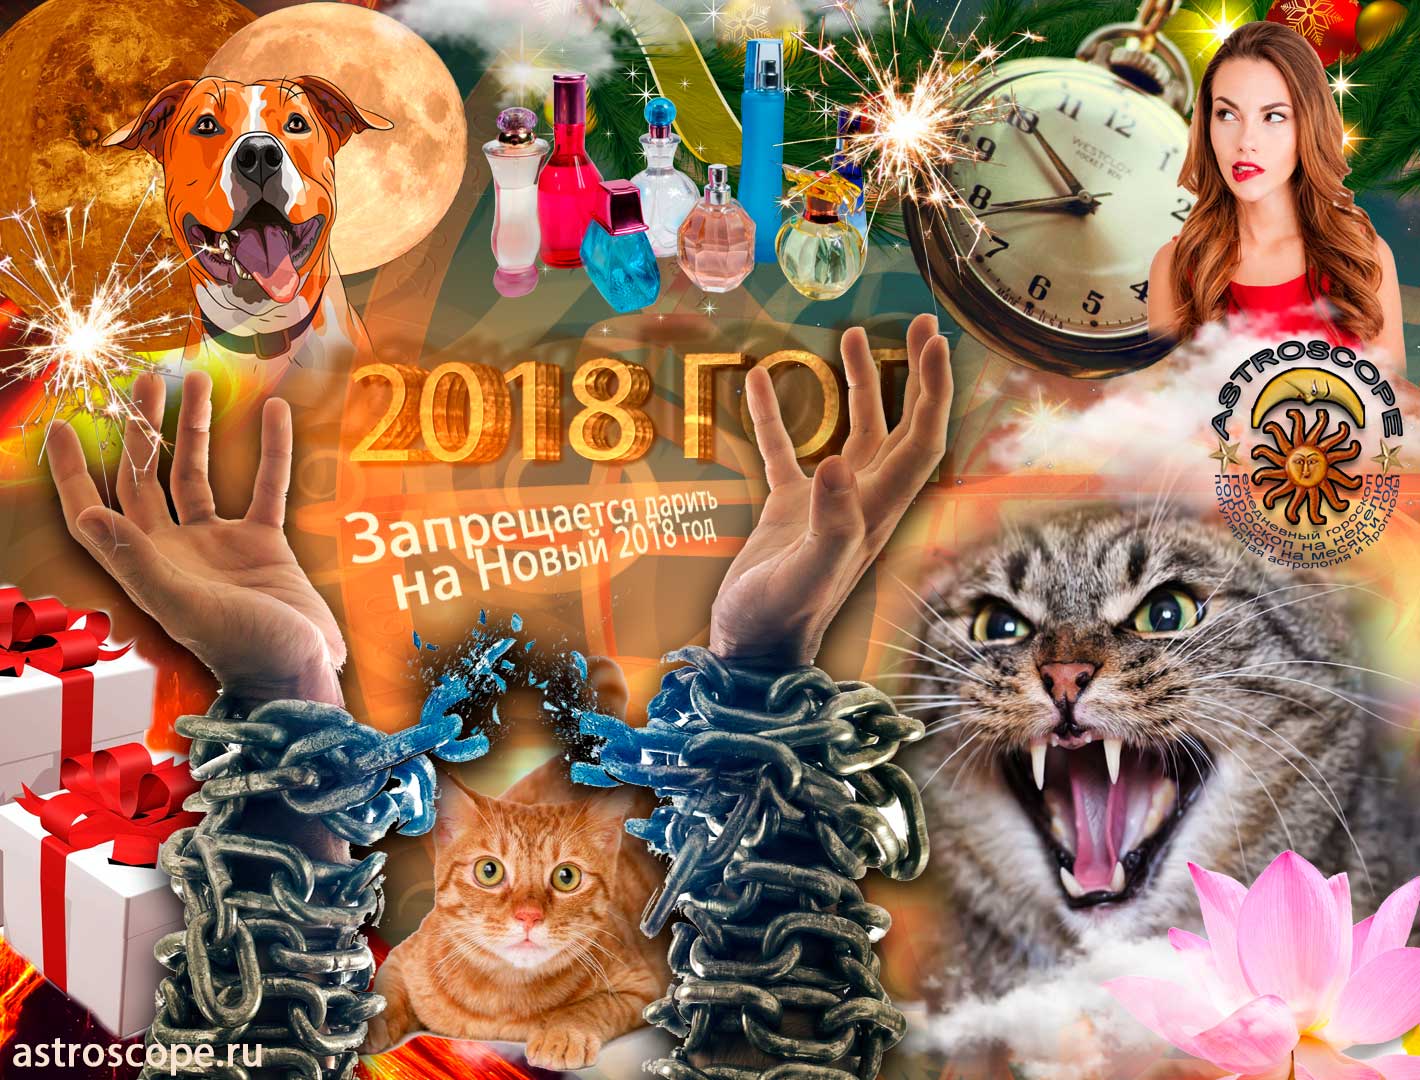 Запрещается дарить на Новый 2018 год